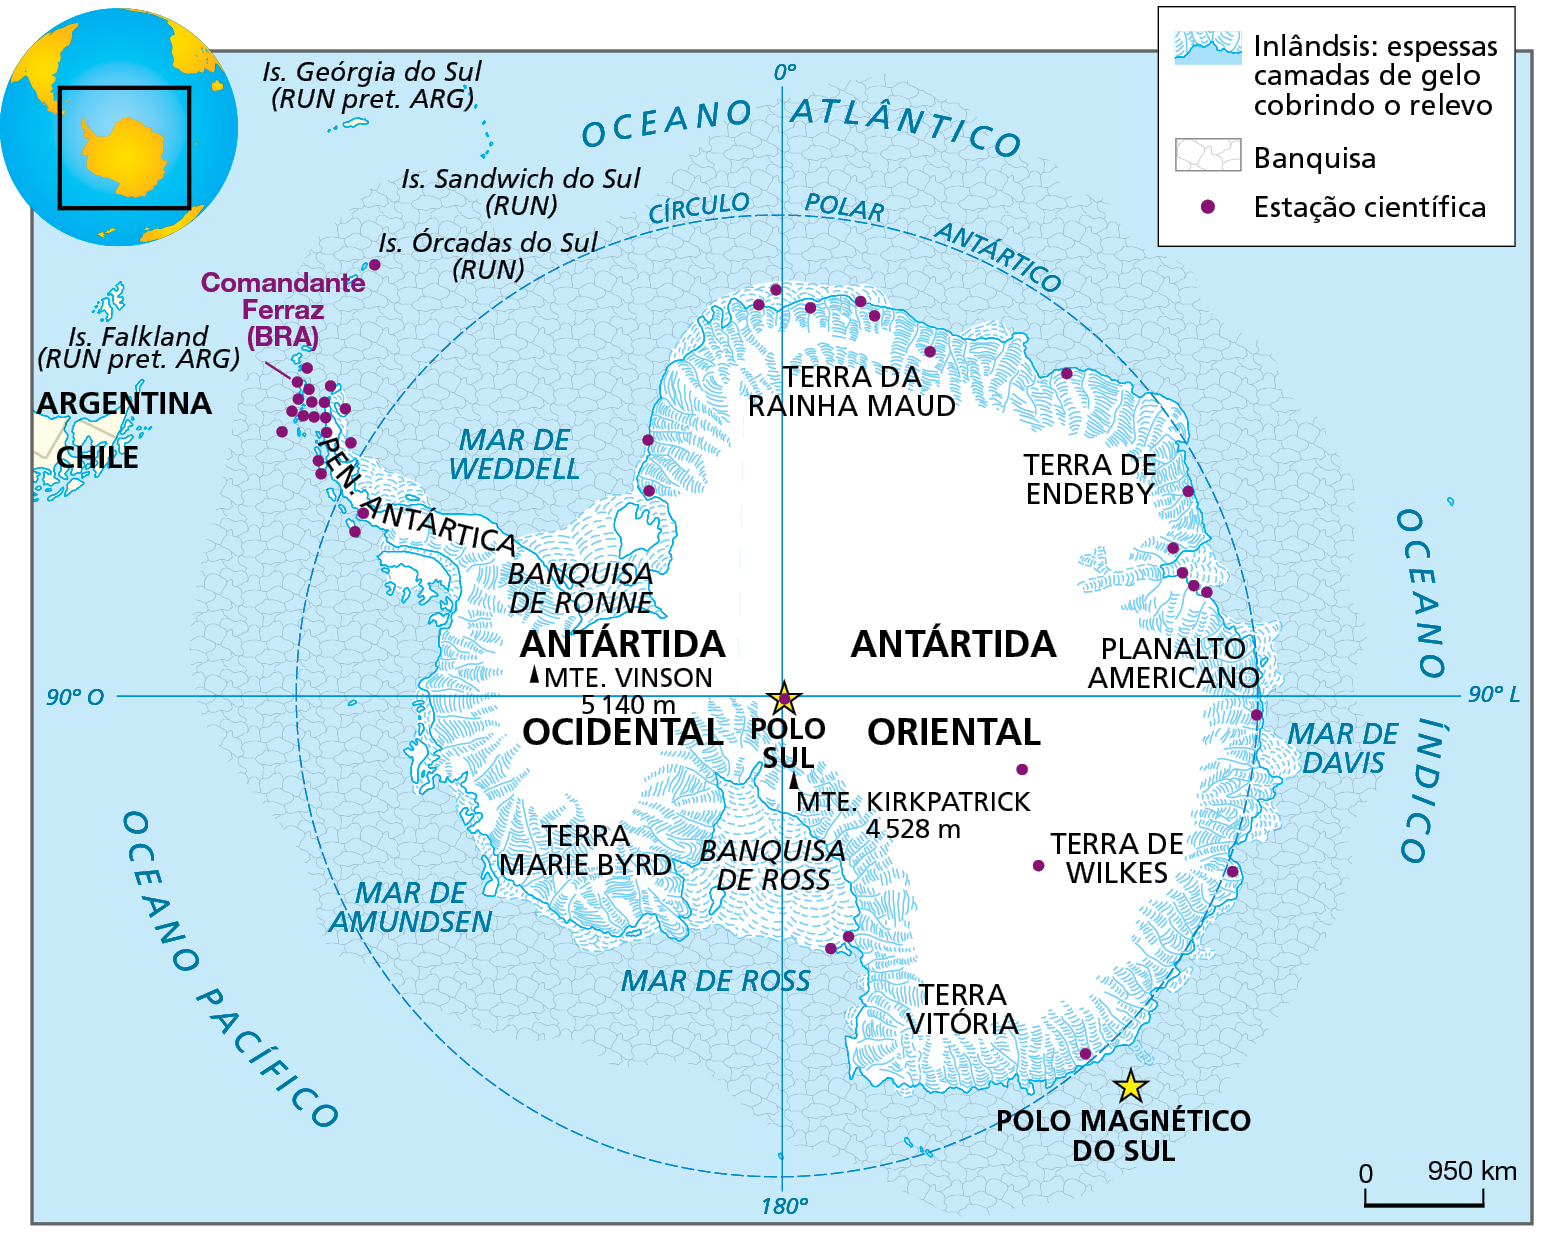 Mapa. Antártida. Mapa da região da Antártida, representando as áreas de inlândsis (espessas camadas de gelo cobrindo o relevo), regiões de banquisa e localização das estações científicas.  O território da Antártida está em sua maior parte dentro da área delimitada  pelo Círculo Polar Antártico, cercada de banquisas. No centro do círculo está o Polo Sul, no cruzamento entre o meridiano zero grau/180 graus e o paralelo zero grau/90 graus, indicado por uma estrela vermelha. Abaixo e à direita, uma estrela amarela representa o Polo Magnético do Sul. À esquerda do meridiano zero grau está a Antártida Ocidental, onde se localiza a Banquisa de Ronne, o Monte Vinson, com 5.140 metros de altitude, a Terra Marie Byrd, uma parte da Banquisa de Ross e a Península da Antártica, além do Mar de Weddell, mar de Amundsen e Mar de Ross. Nessa península se localizam diversas estações científicas, entre elas, a estação científica brasileira Comandante Ferraz. À direita do meridiano está a Antártida Oriental, onde se localizam a Terra de Enderby, o Planalto Americano, a Terra de Wilkes, a Terra da Rainha Maud, a Terra Vitória, parte da Banquisa de Ross e o Monte Kirkpatrick, com 4.528 metros de altitude, além do Mar de Davis.  Na parte inferior direita do mapa, escala de 0 a 950 quilômetros.